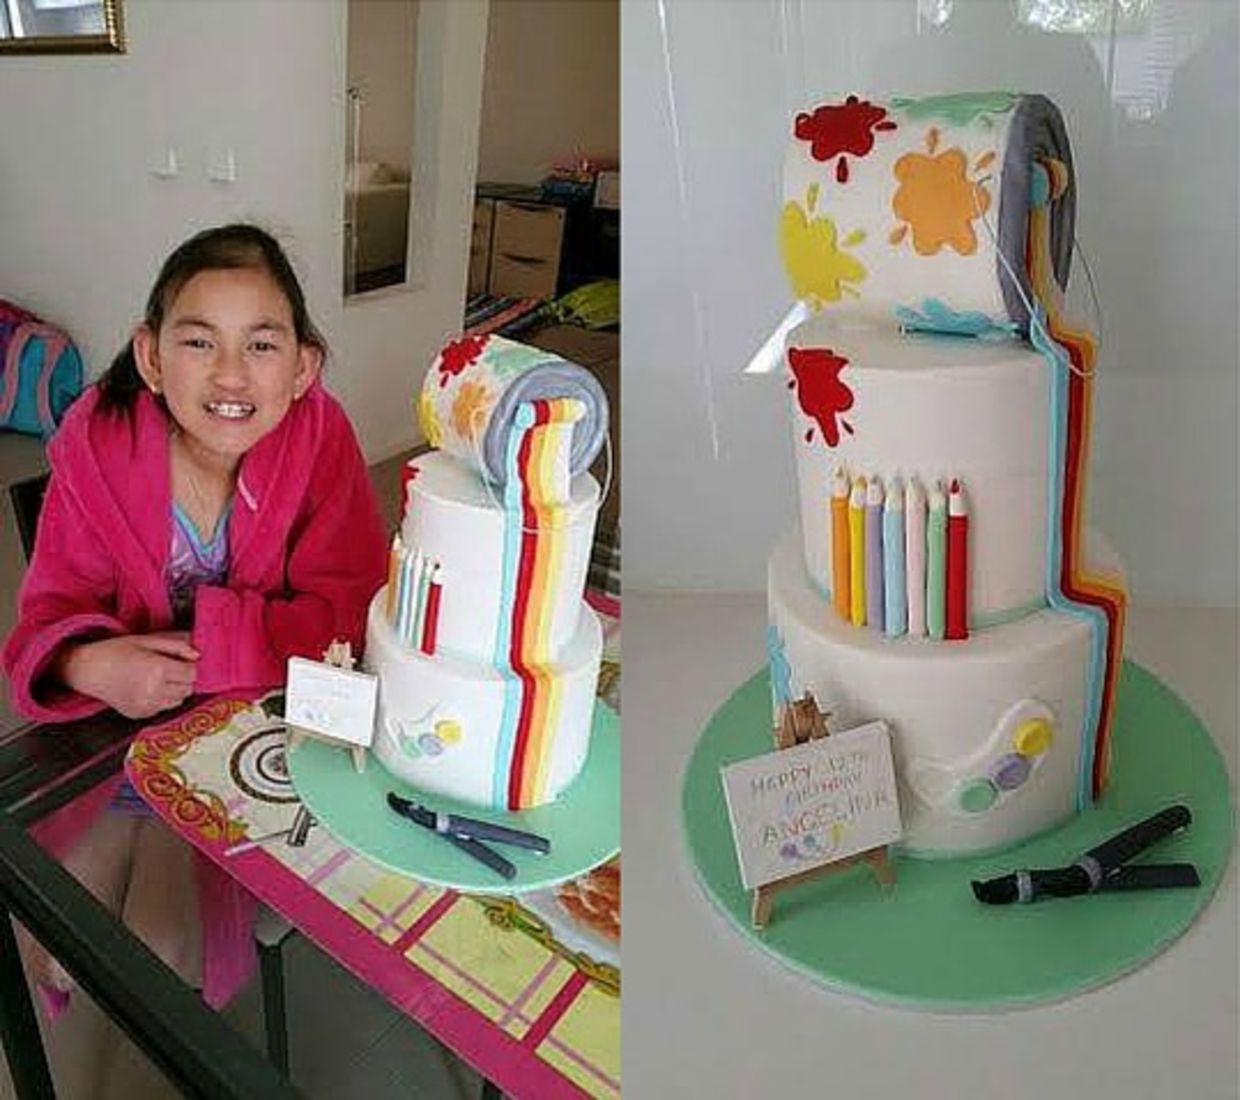 Art-themed cake